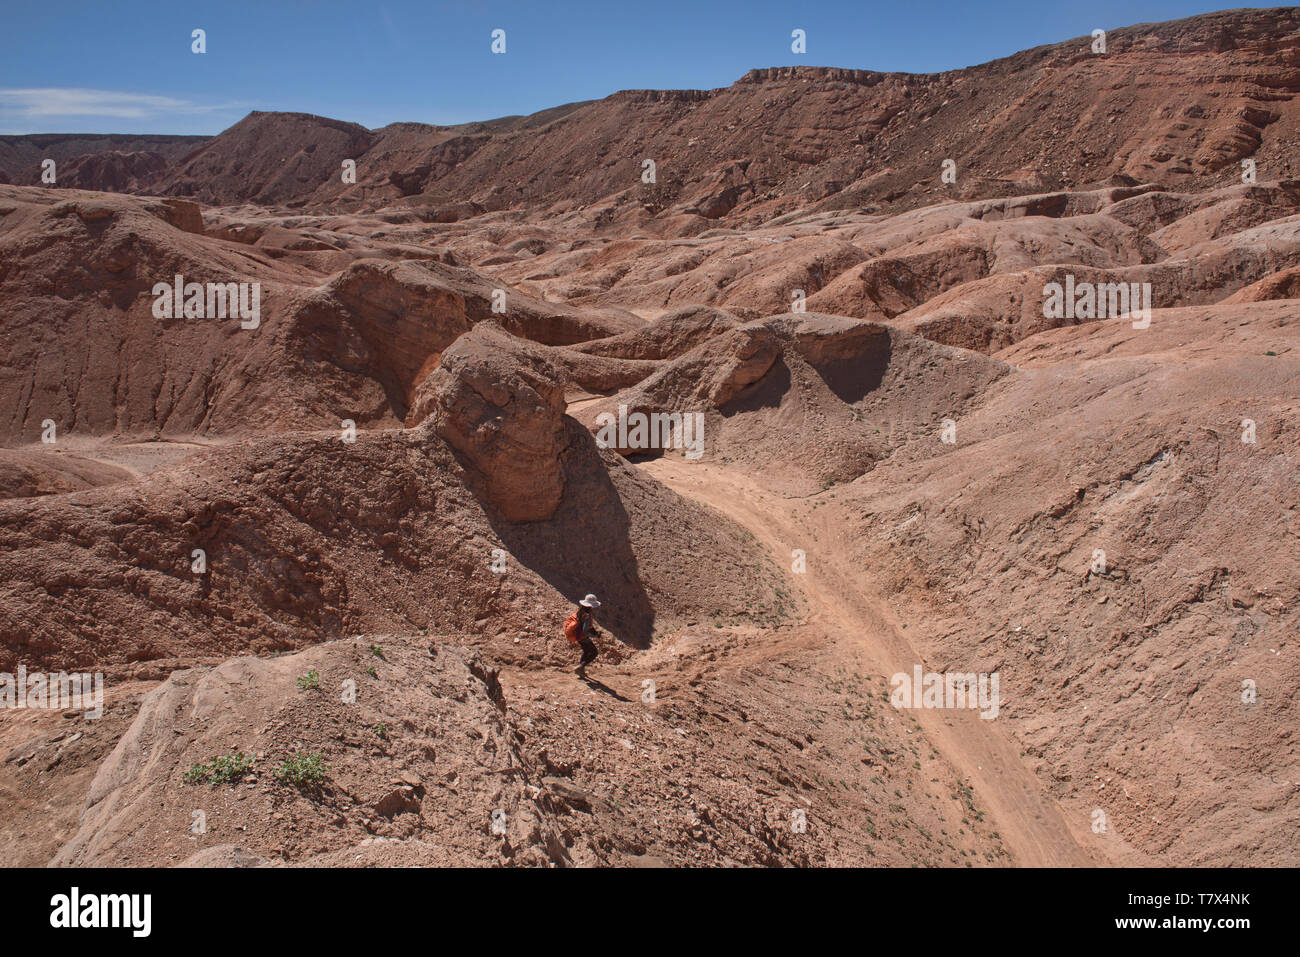 Trekking attraverso il fantastico paesaggio del deserto nella Valle di Marte, San Pedro de Atacama, Cile Foto Stock